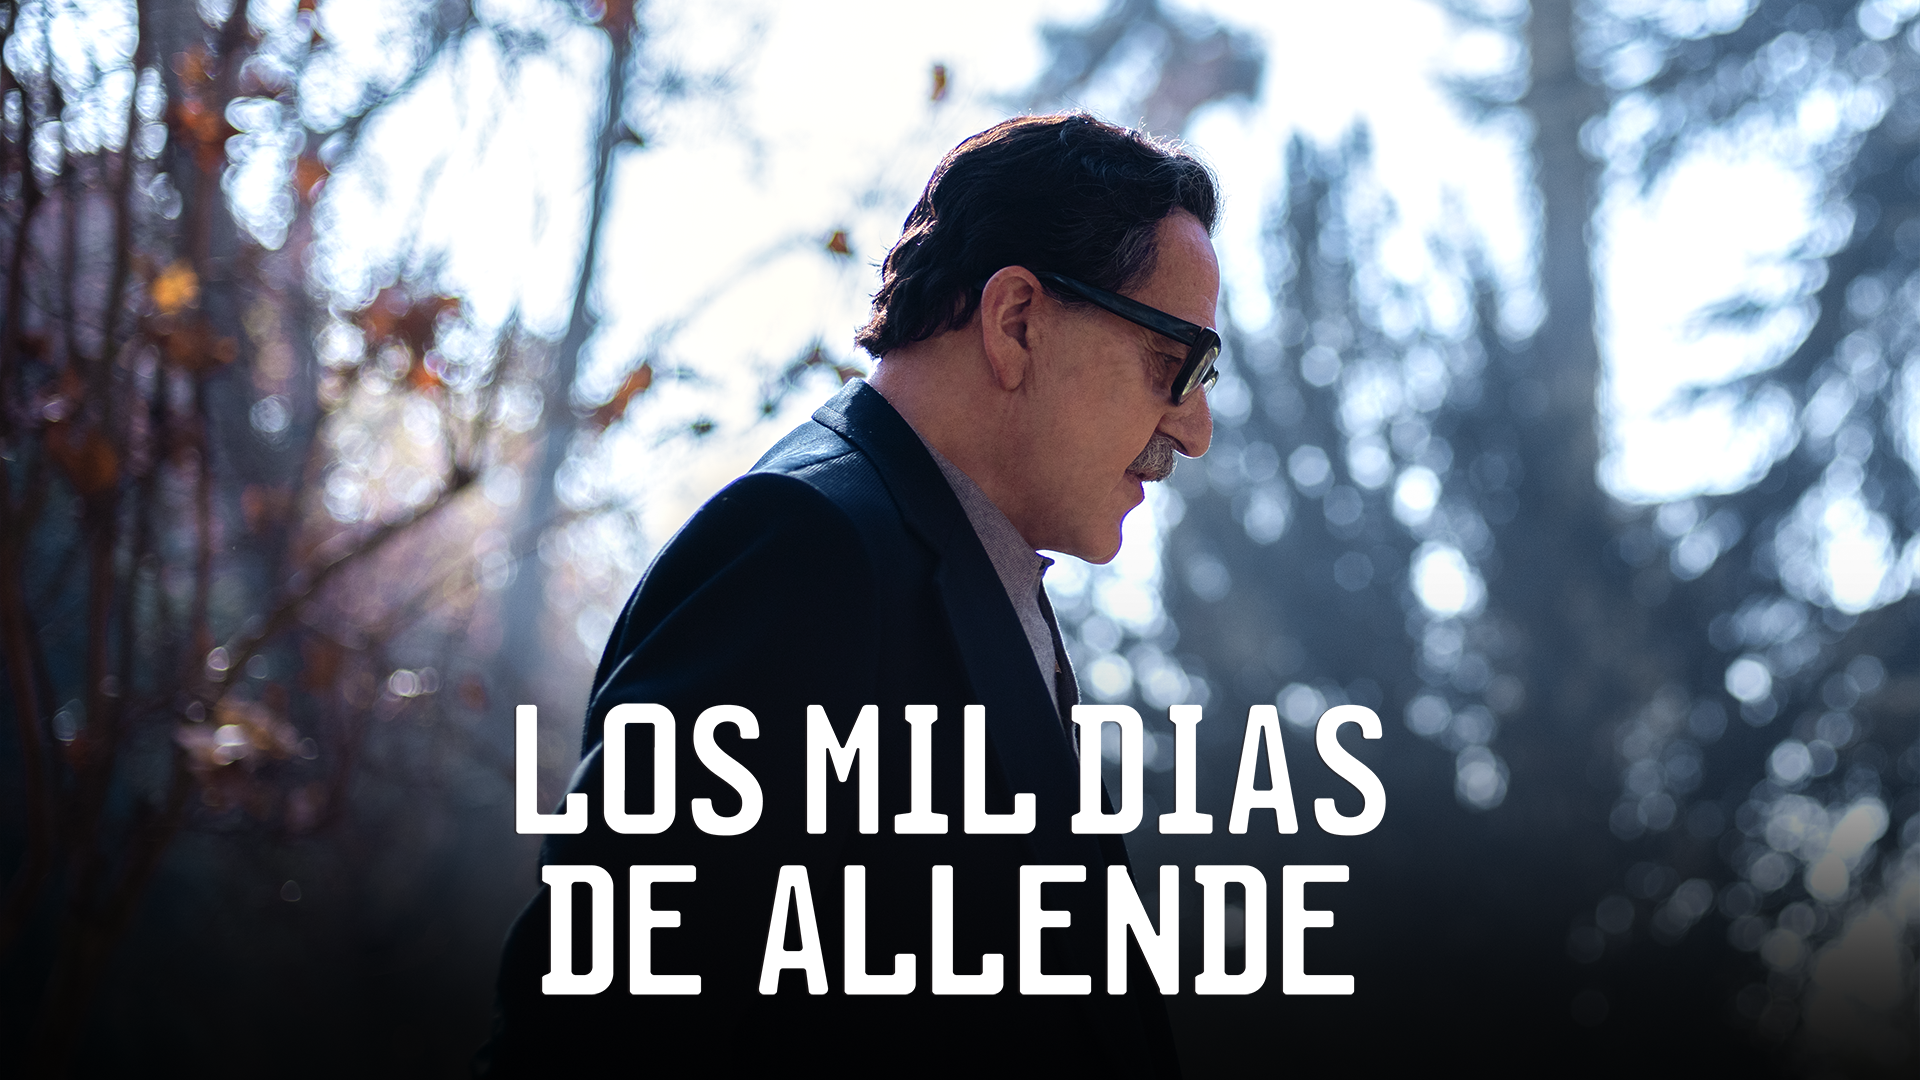 Los mil días de Allende